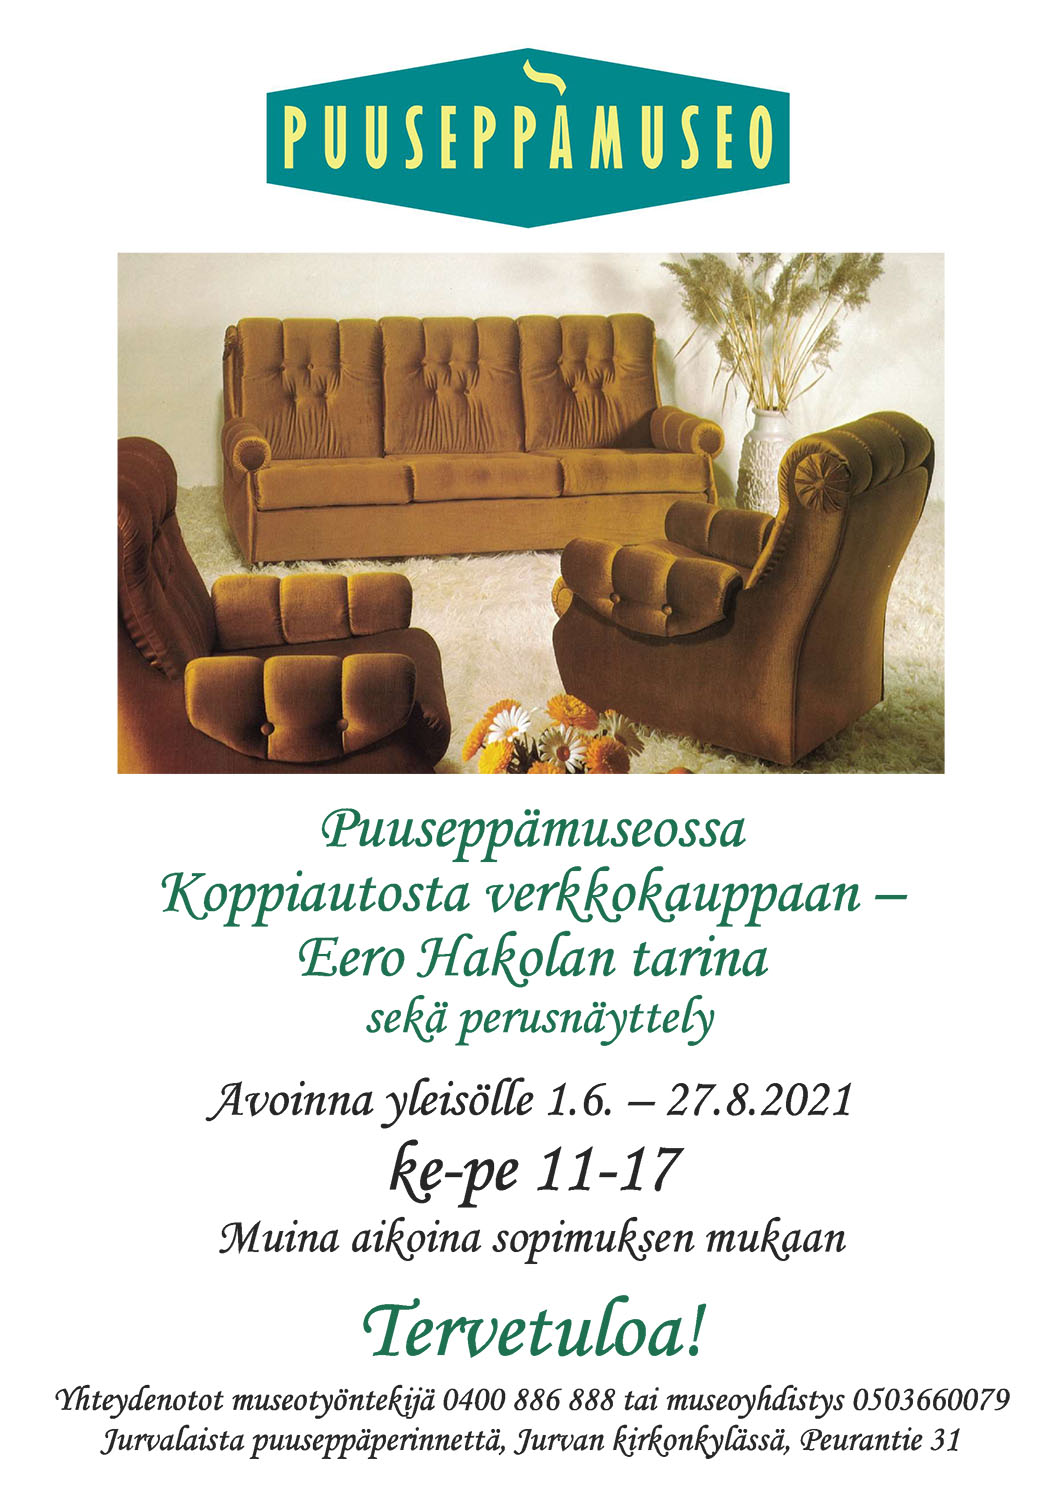 Jurvan puuseppämuseo | Kesän 2021 teemanäyttely | 2021 Koppiautosta verkkokauppaan – Eero Hakolan tarina